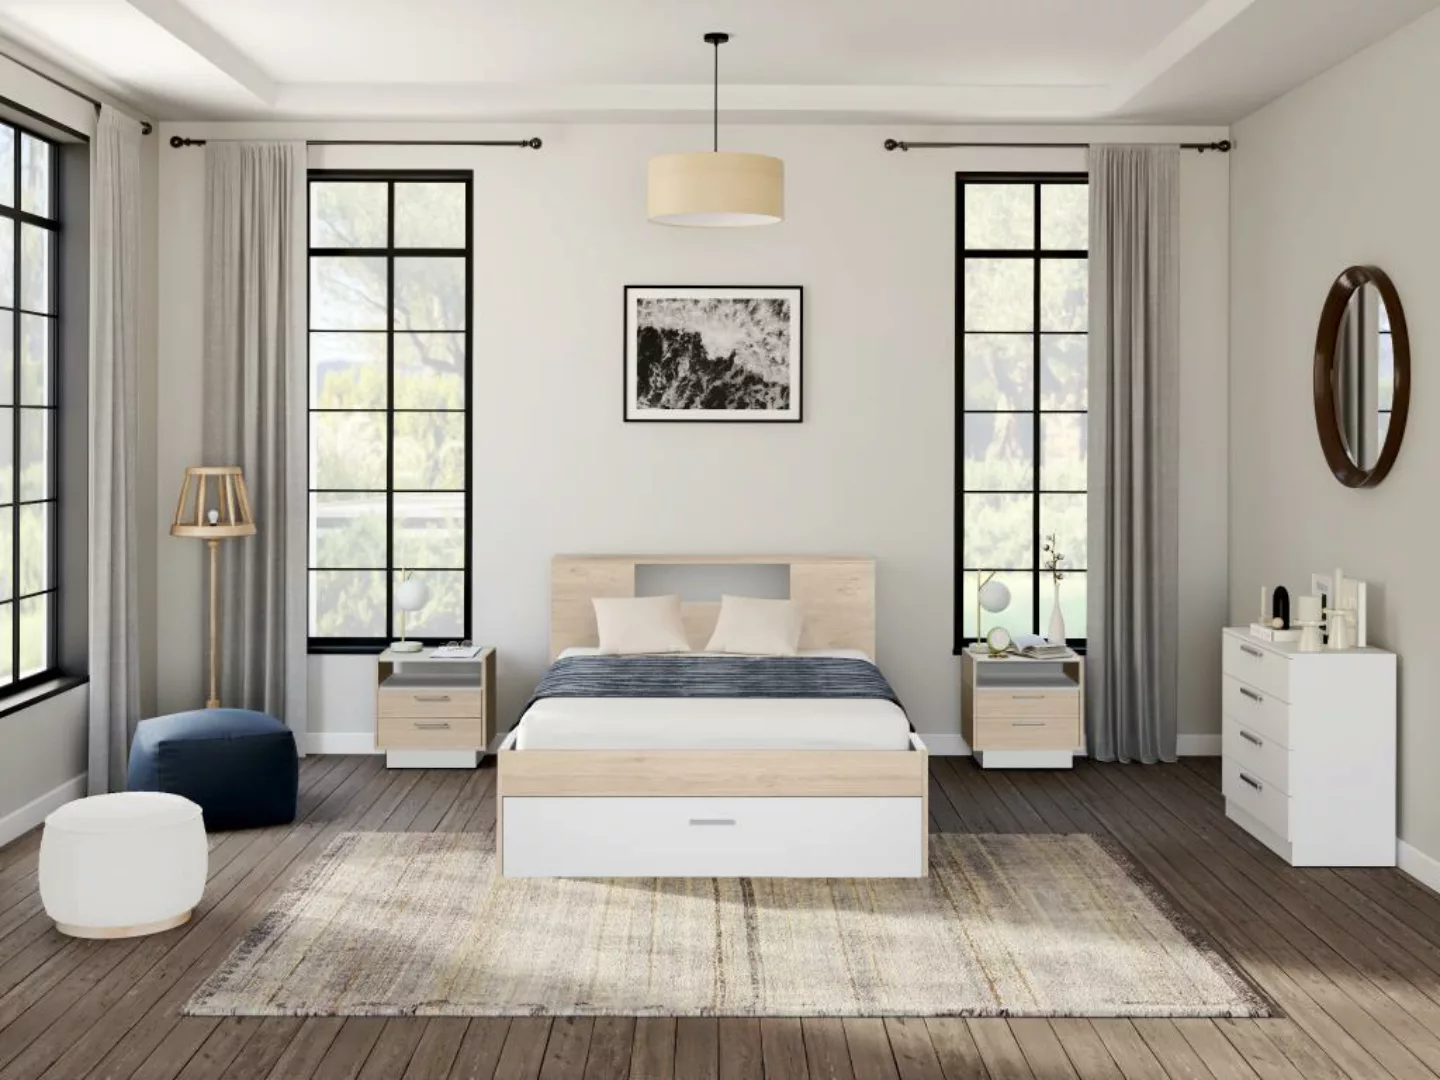 Bett mit Kopfteil, Stauraum & Schubladen + Nachttische - 140 x 190 cm - Hol günstig online kaufen